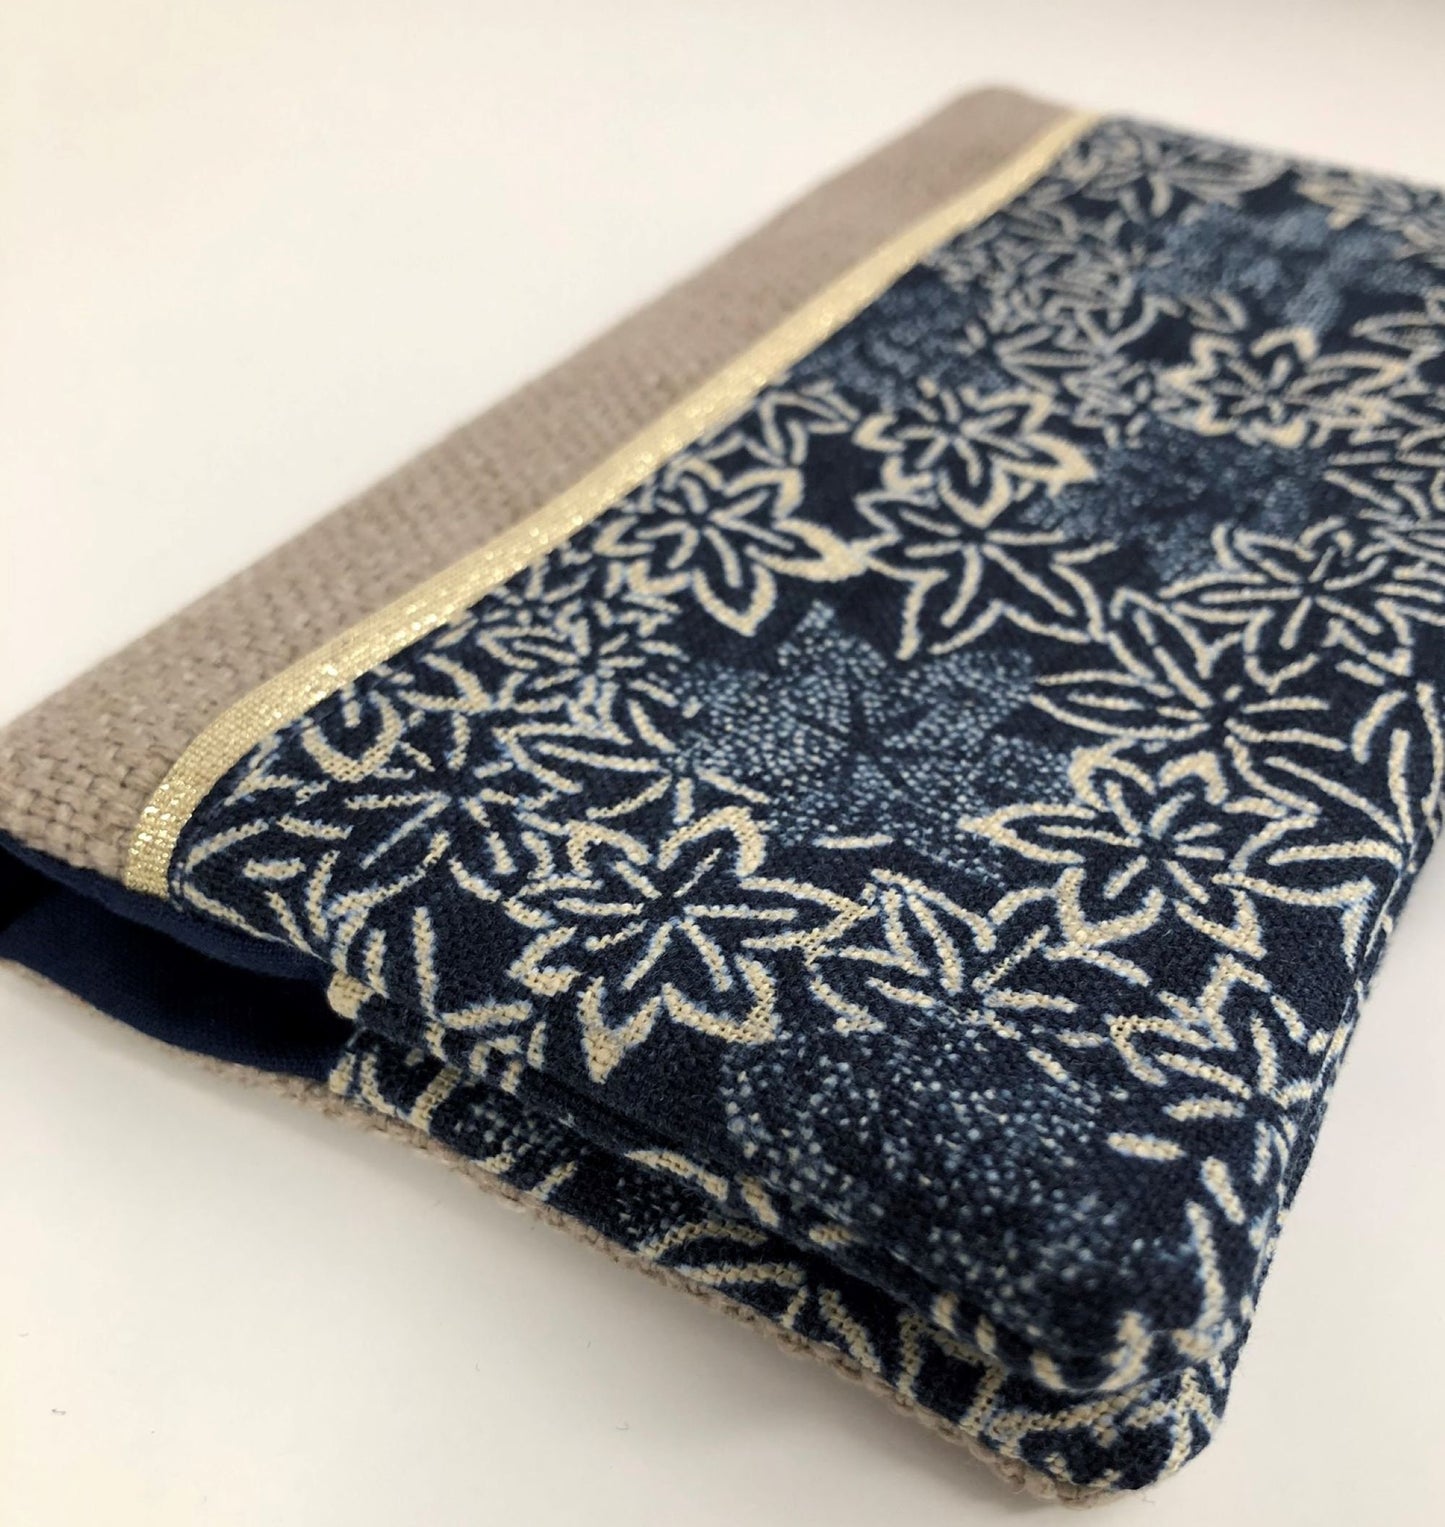 Porte-chéquier avec porte-stylo en lin et tissu japonais traditionnel bleu